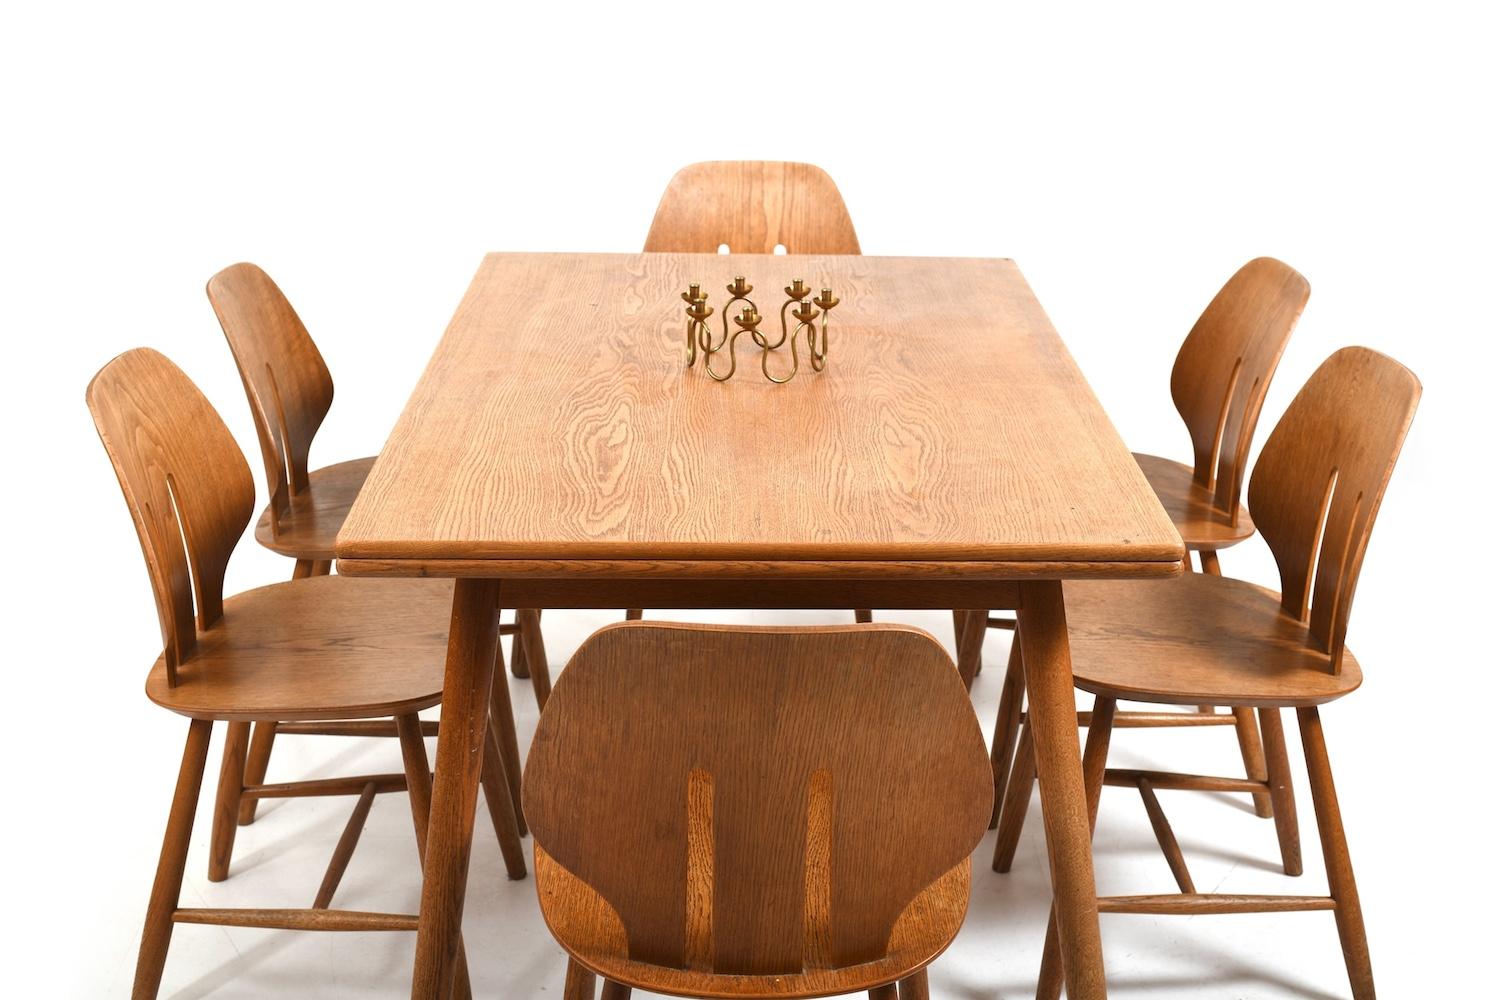 Ensemble de salle à manger FDB Møbler composé de 6 chaises d'Ejvind A. One, modèle J67 et d'une table de Poul M. Volther. Fabriqué en chêne. Table à rallonge avec pieds inclinés. Danemark, première moitié des années 1960.
-
chaises : H. 78,5 cm / L.